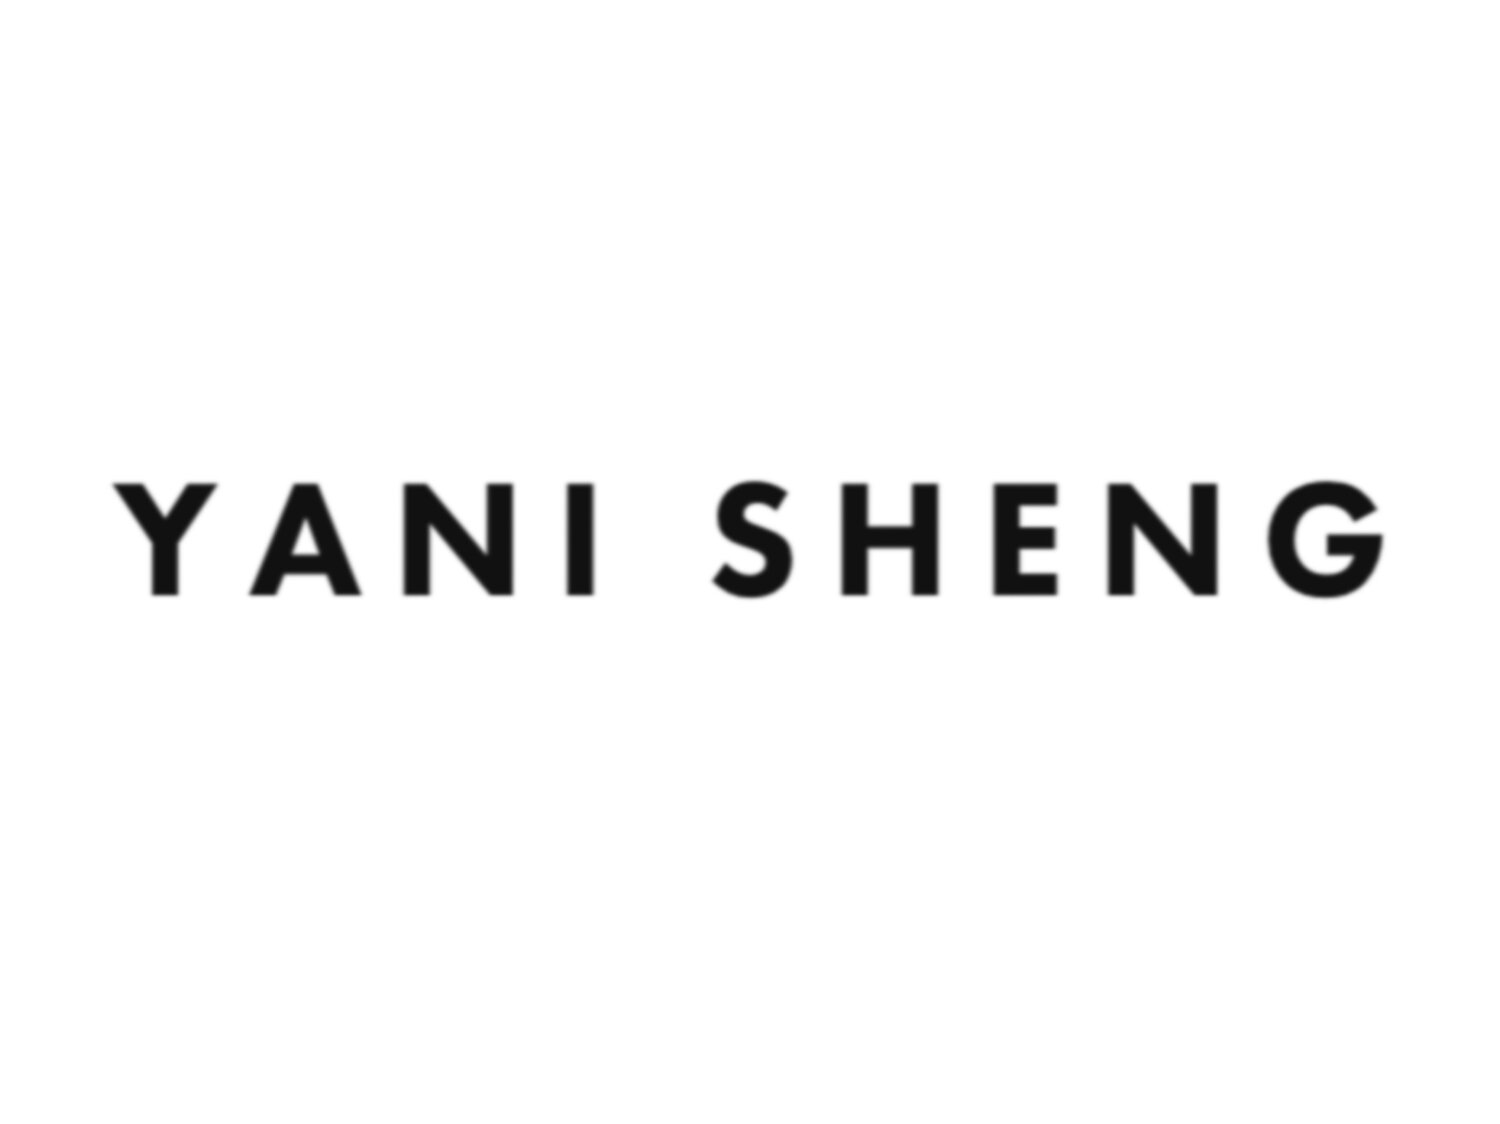 Yani Sheng